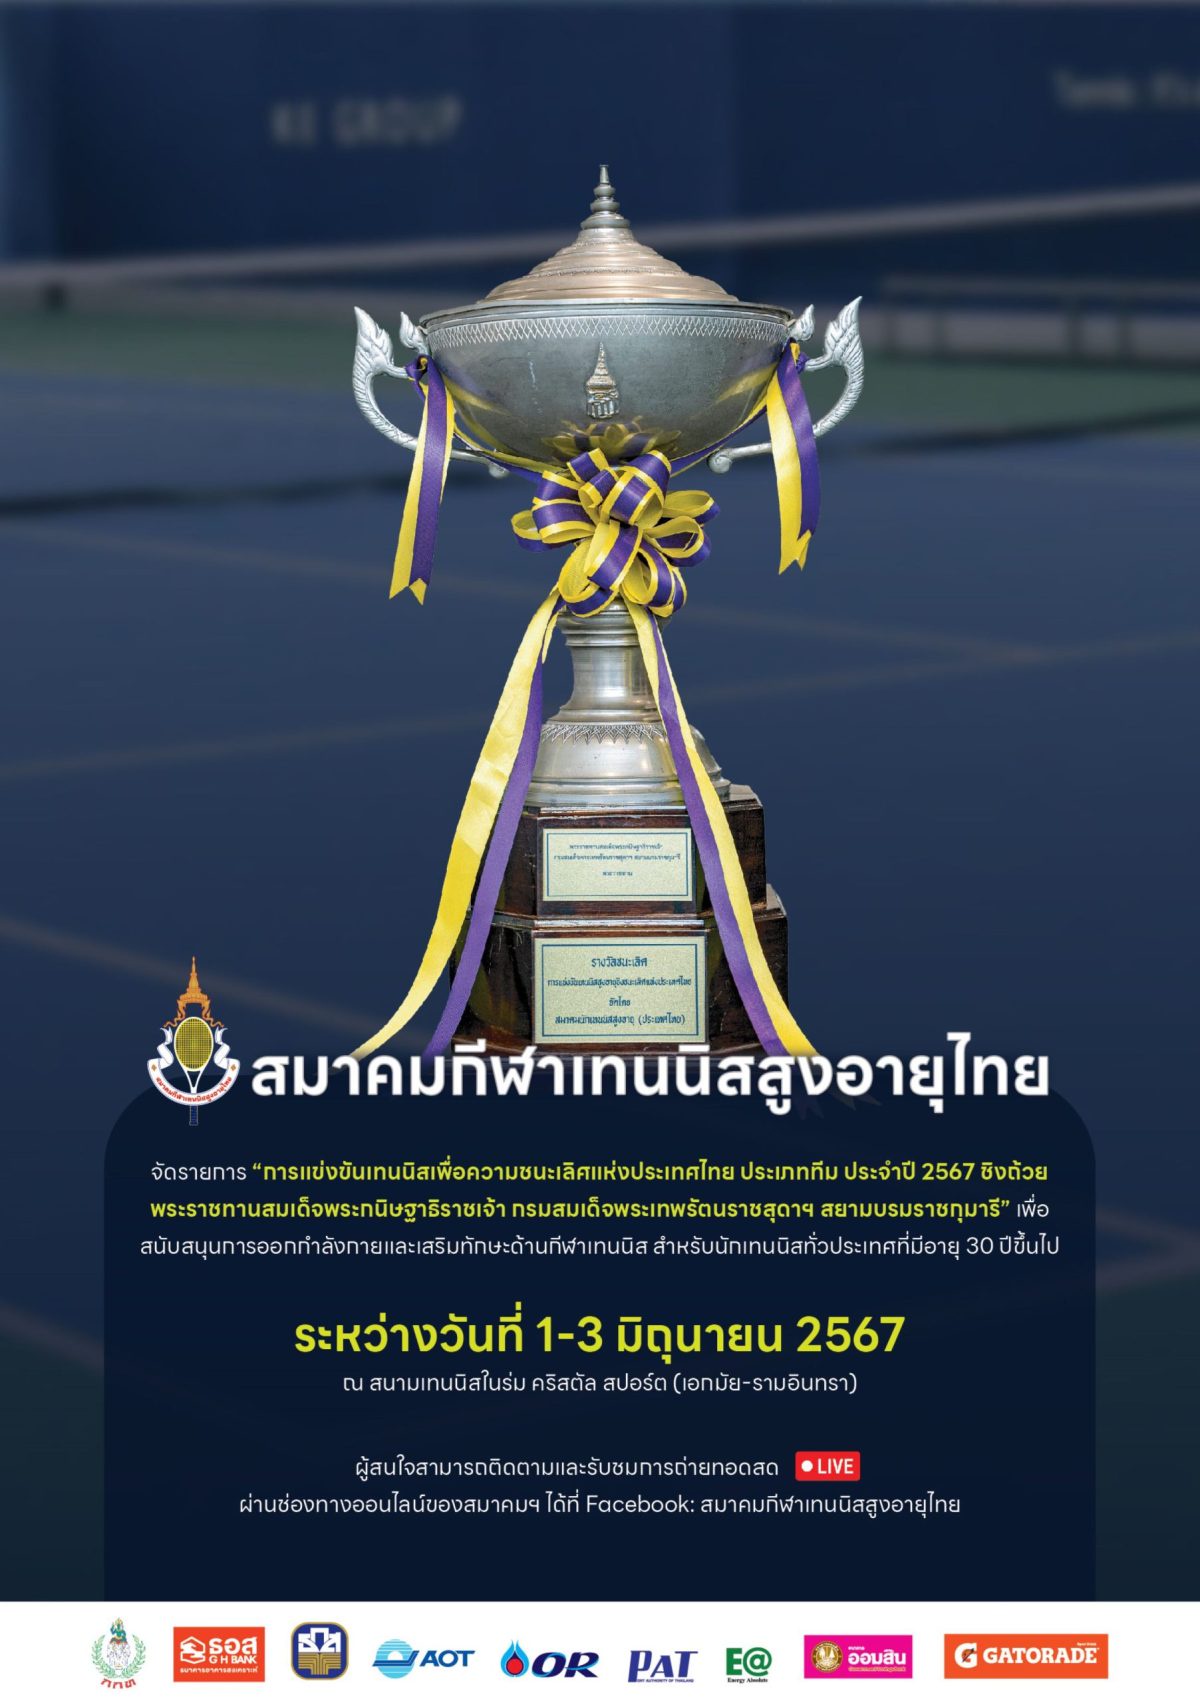 สมาคมกีฬาเทนนิสสูงอายุไทย เตรียมเปิดศึกลูกสักหลาด เฟ้นหาสุดยอดทีมแชมป์ประเทศไทย ชิงถ้วยพระราชทานฯ สมเด็จพระเทพฯ